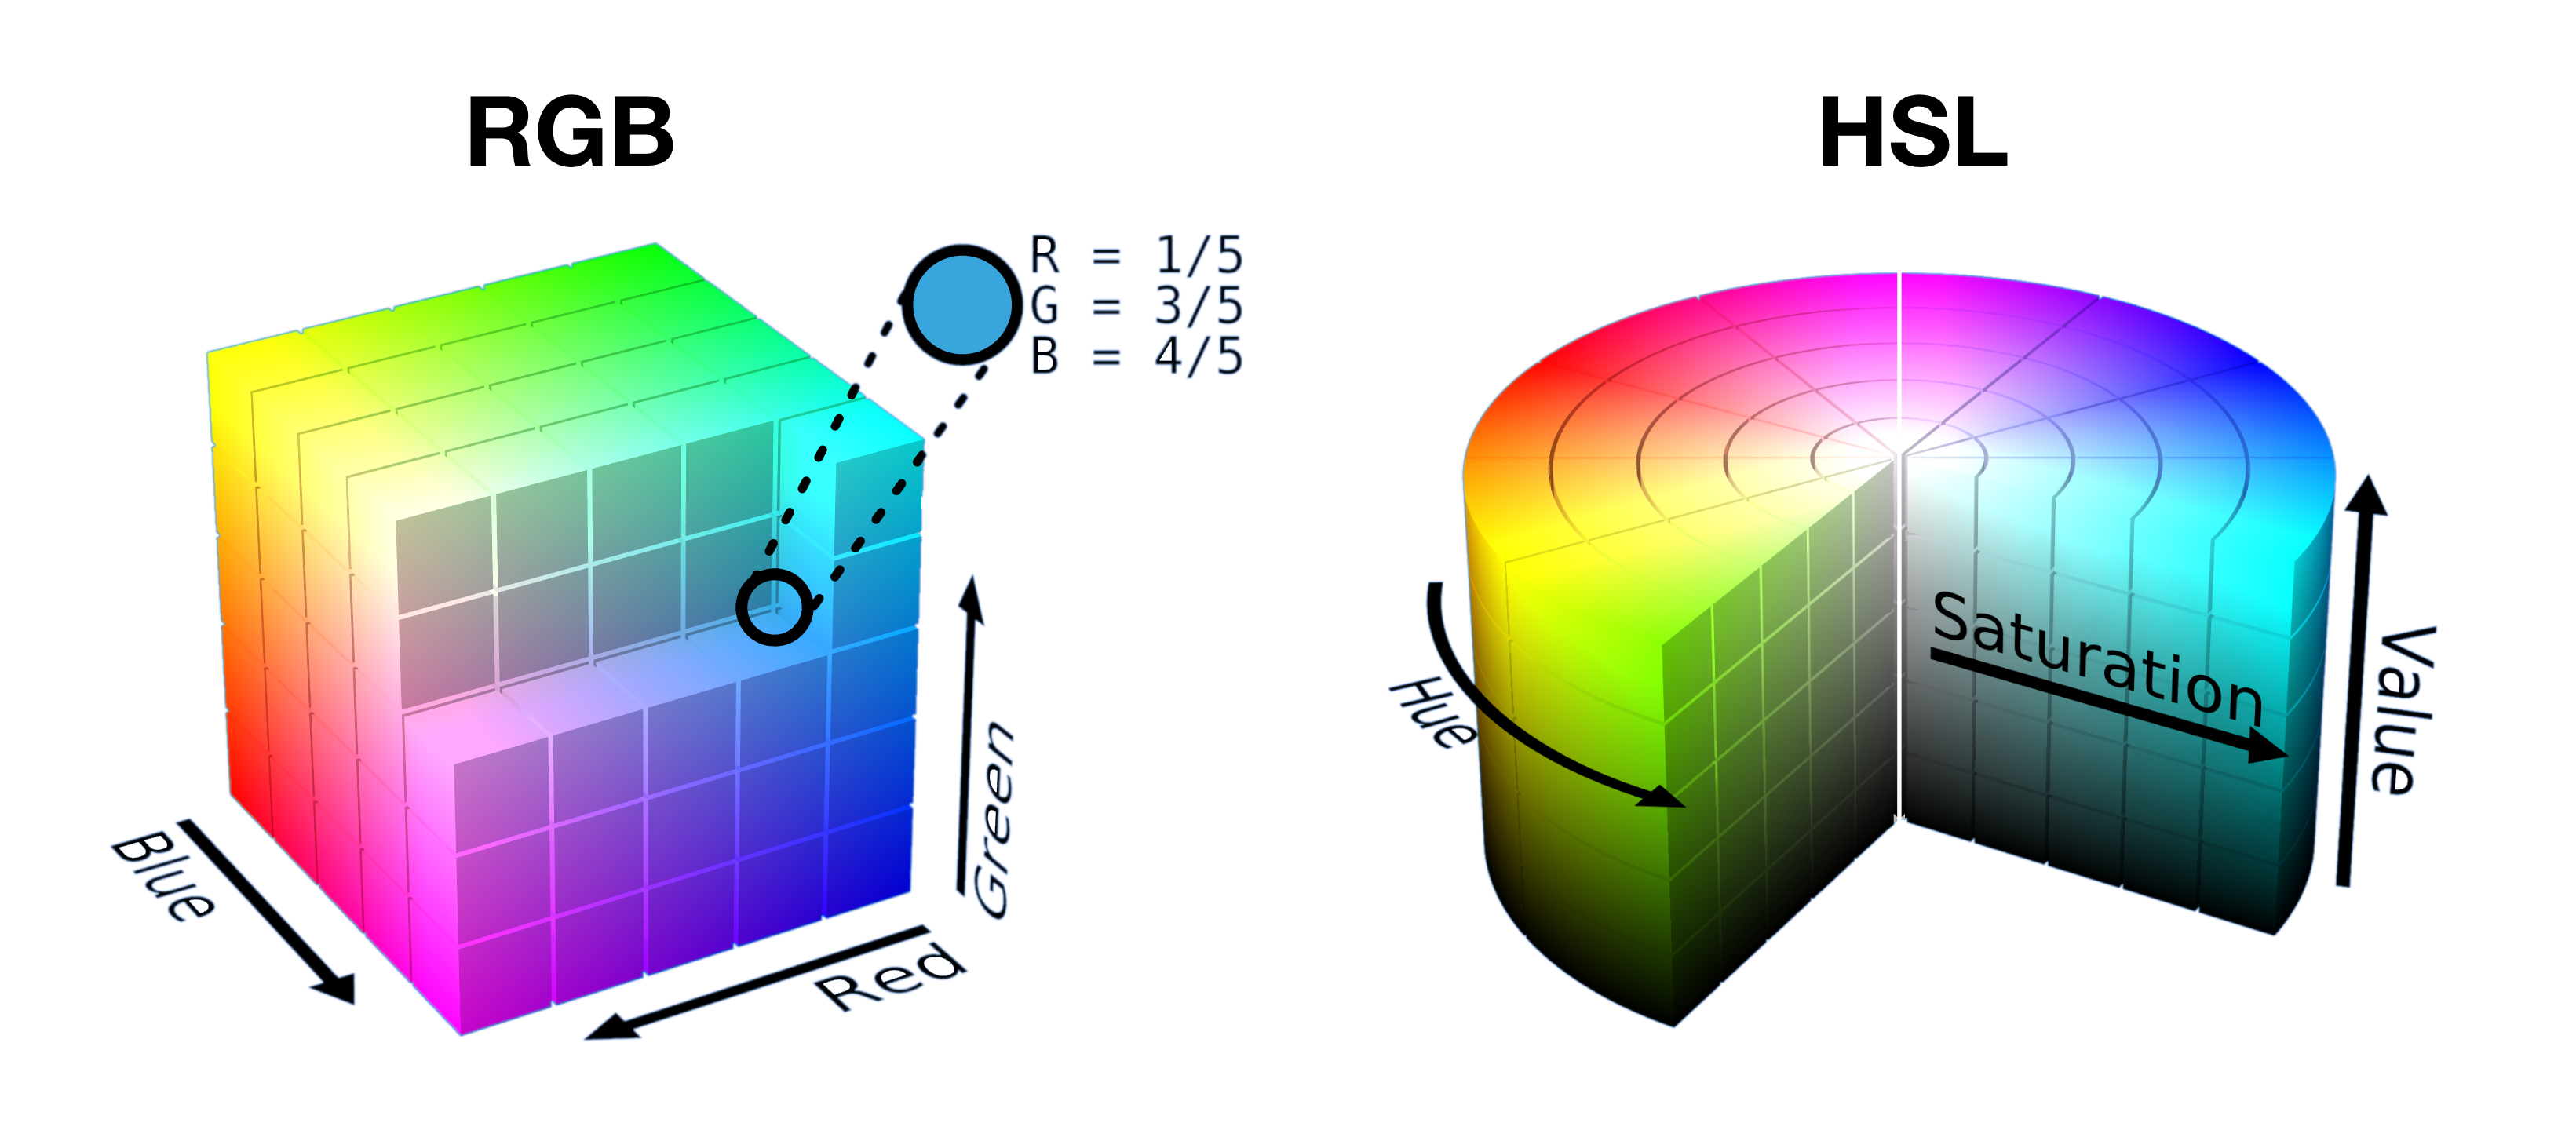 一个半切开的 RGB 立方体和切入 HSL 圆柱的各部分并排显示，展示了颜色如何在每个空间中打包成一个形状。